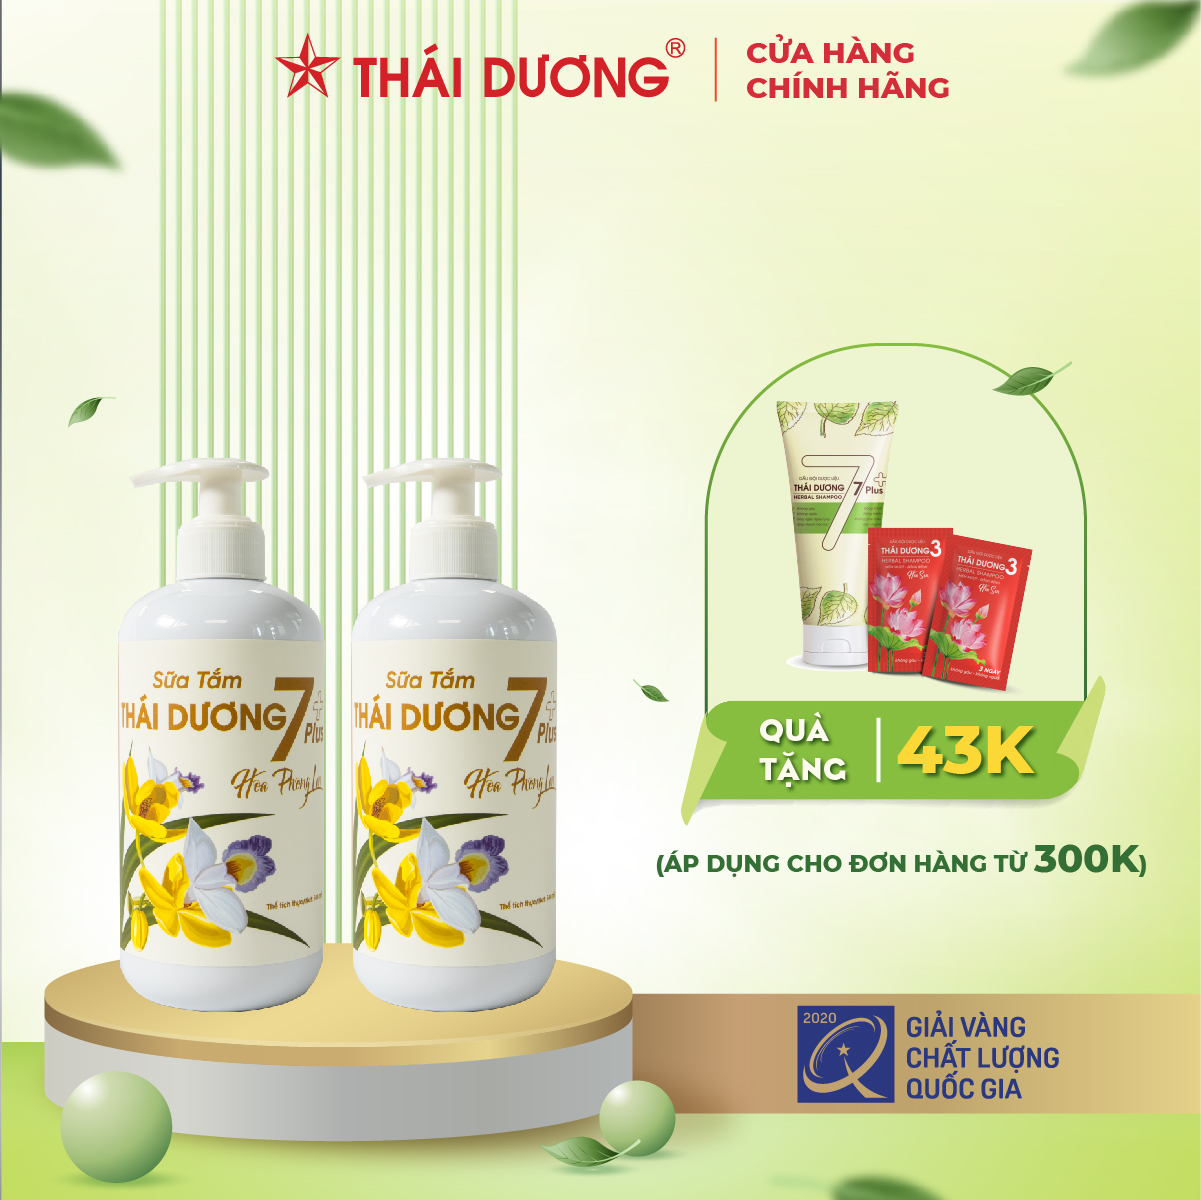 Combo 2 chai Sữa tắm Thái Dương 7 Plus - Hoa Phong Lan 500ml - Sao Thái Dương